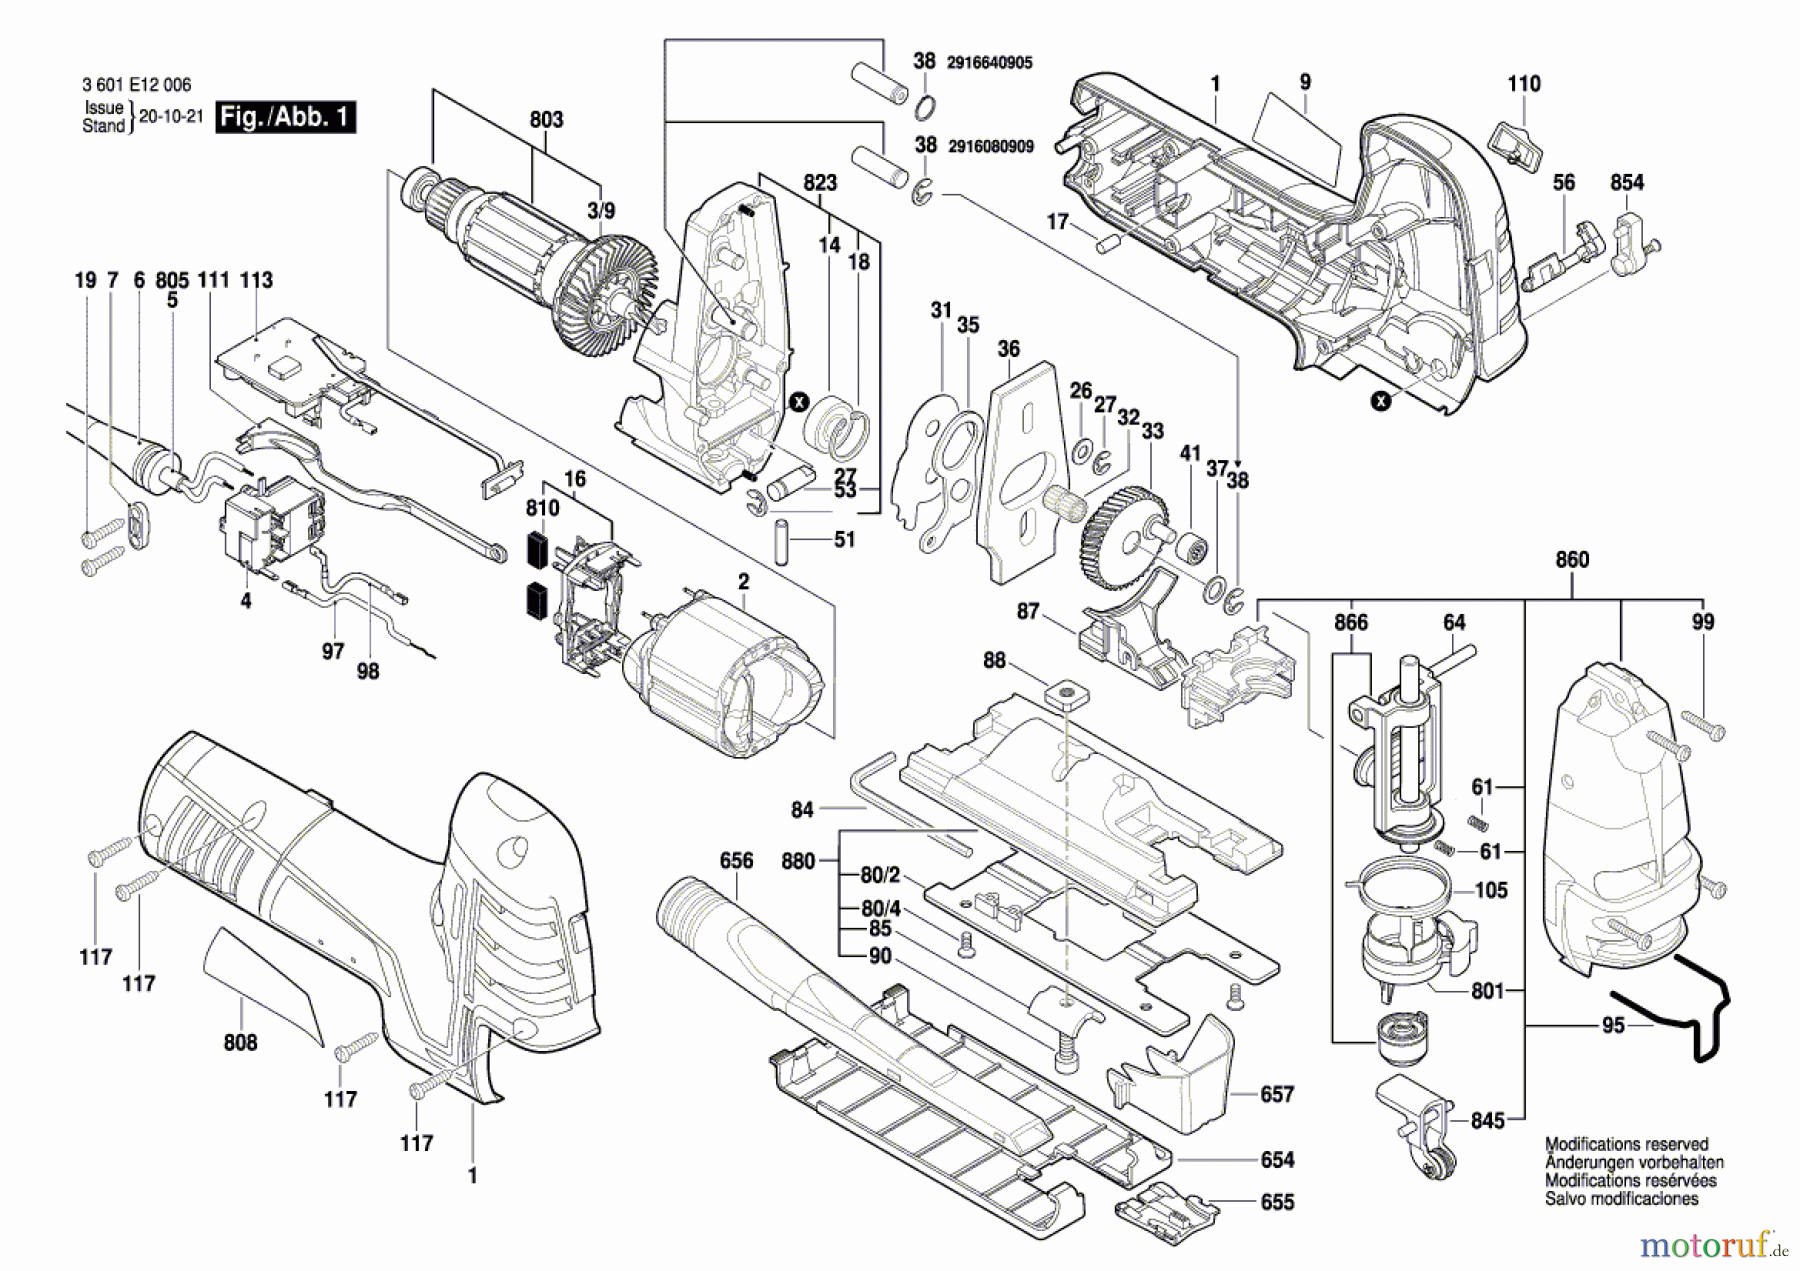  Bosch Werkzeug Stichsäge STP 150 POWER-S Seite 1